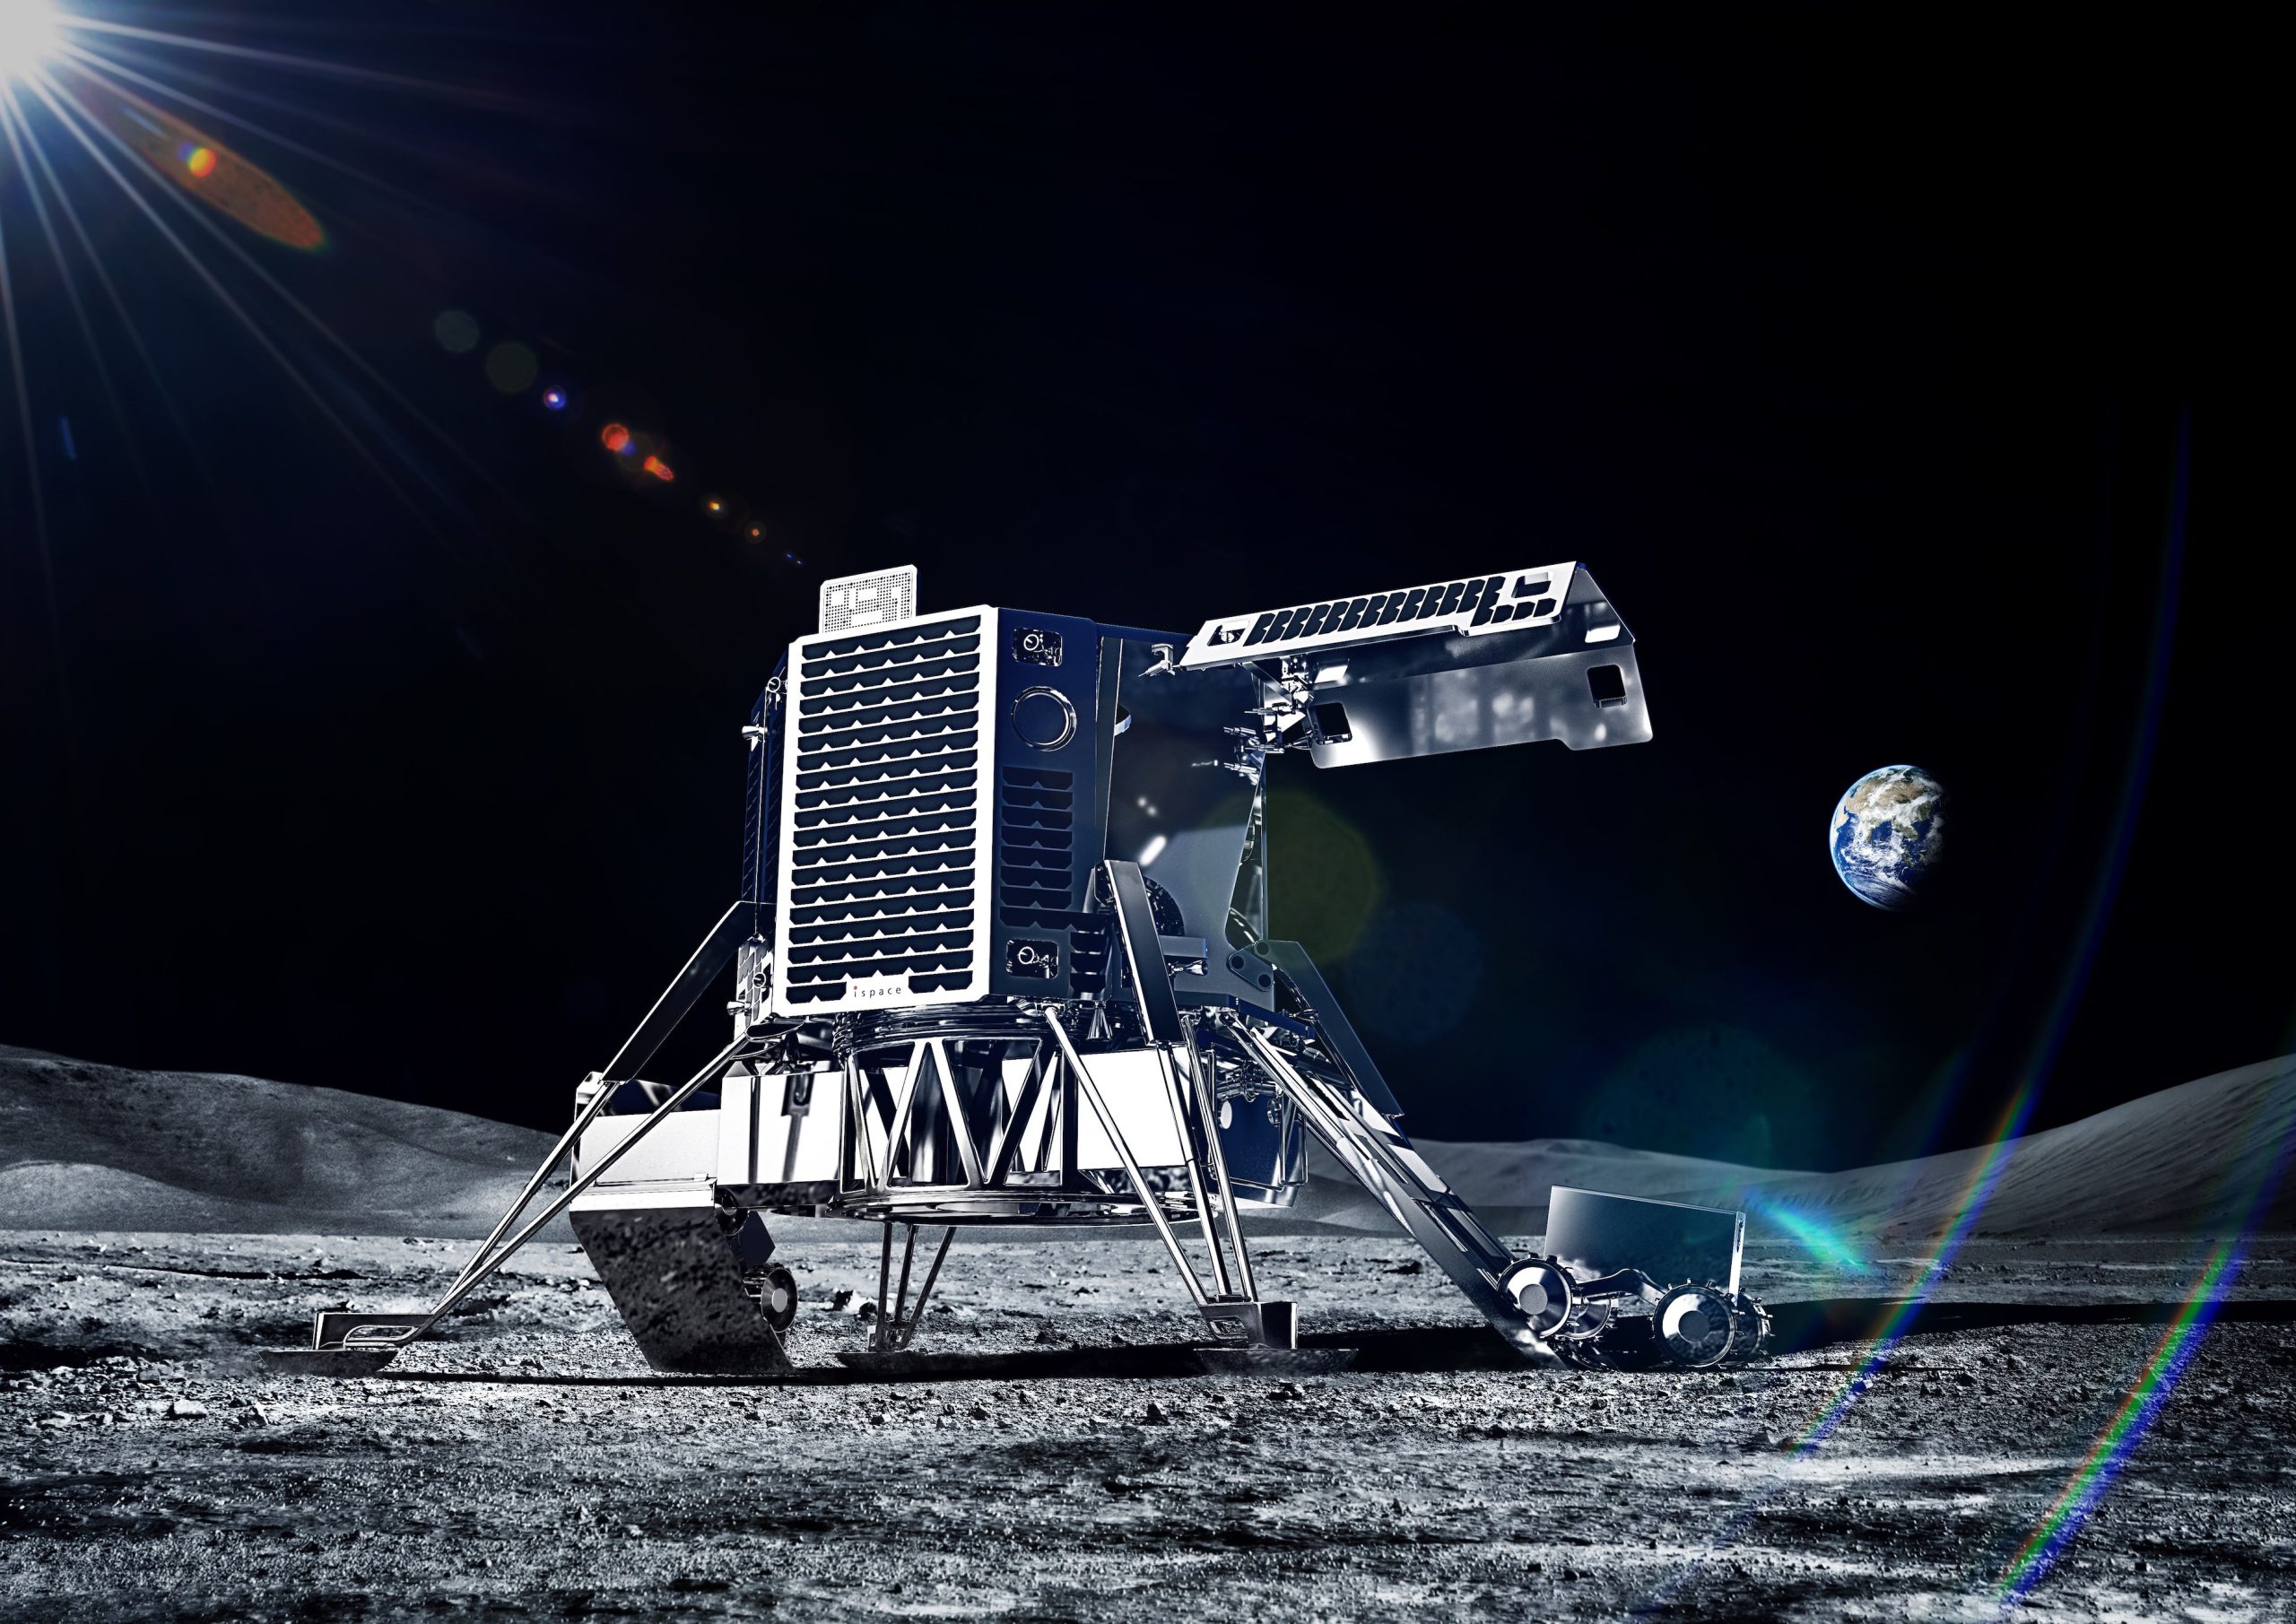 An illustration of the lander.